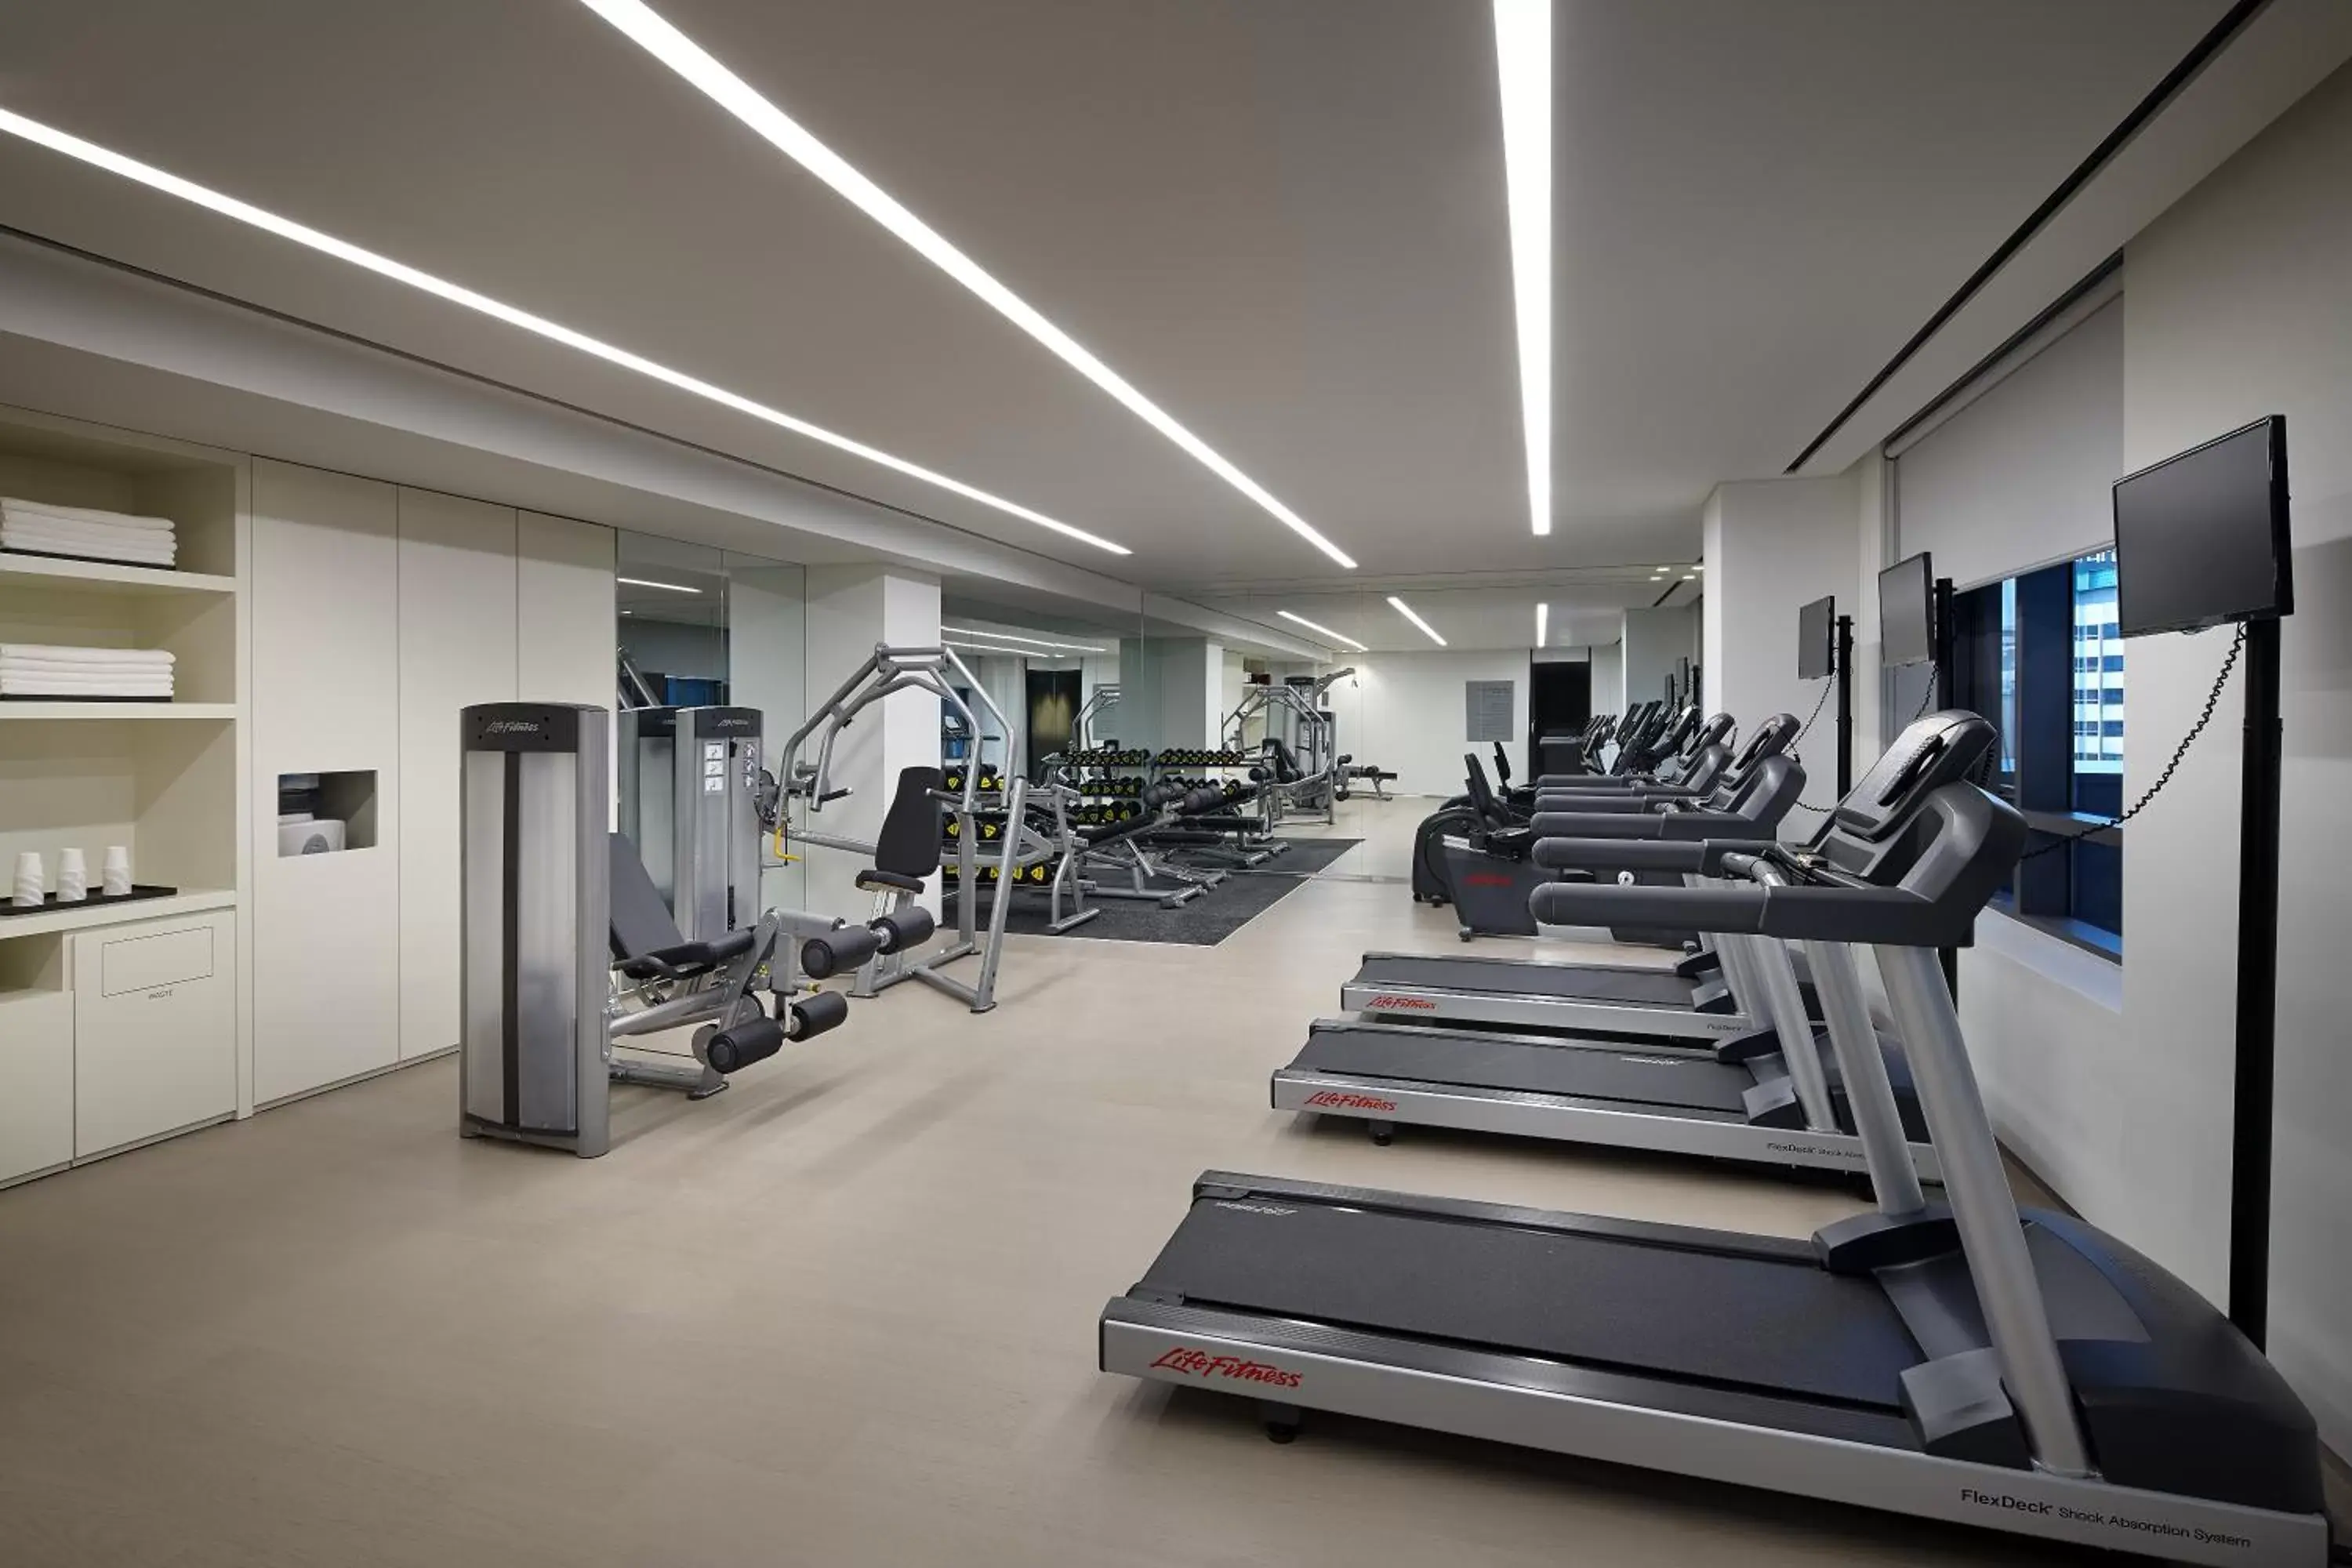 Fitness centre/facilities, Fitness Center/Facilities in Shilla Stay Seocho